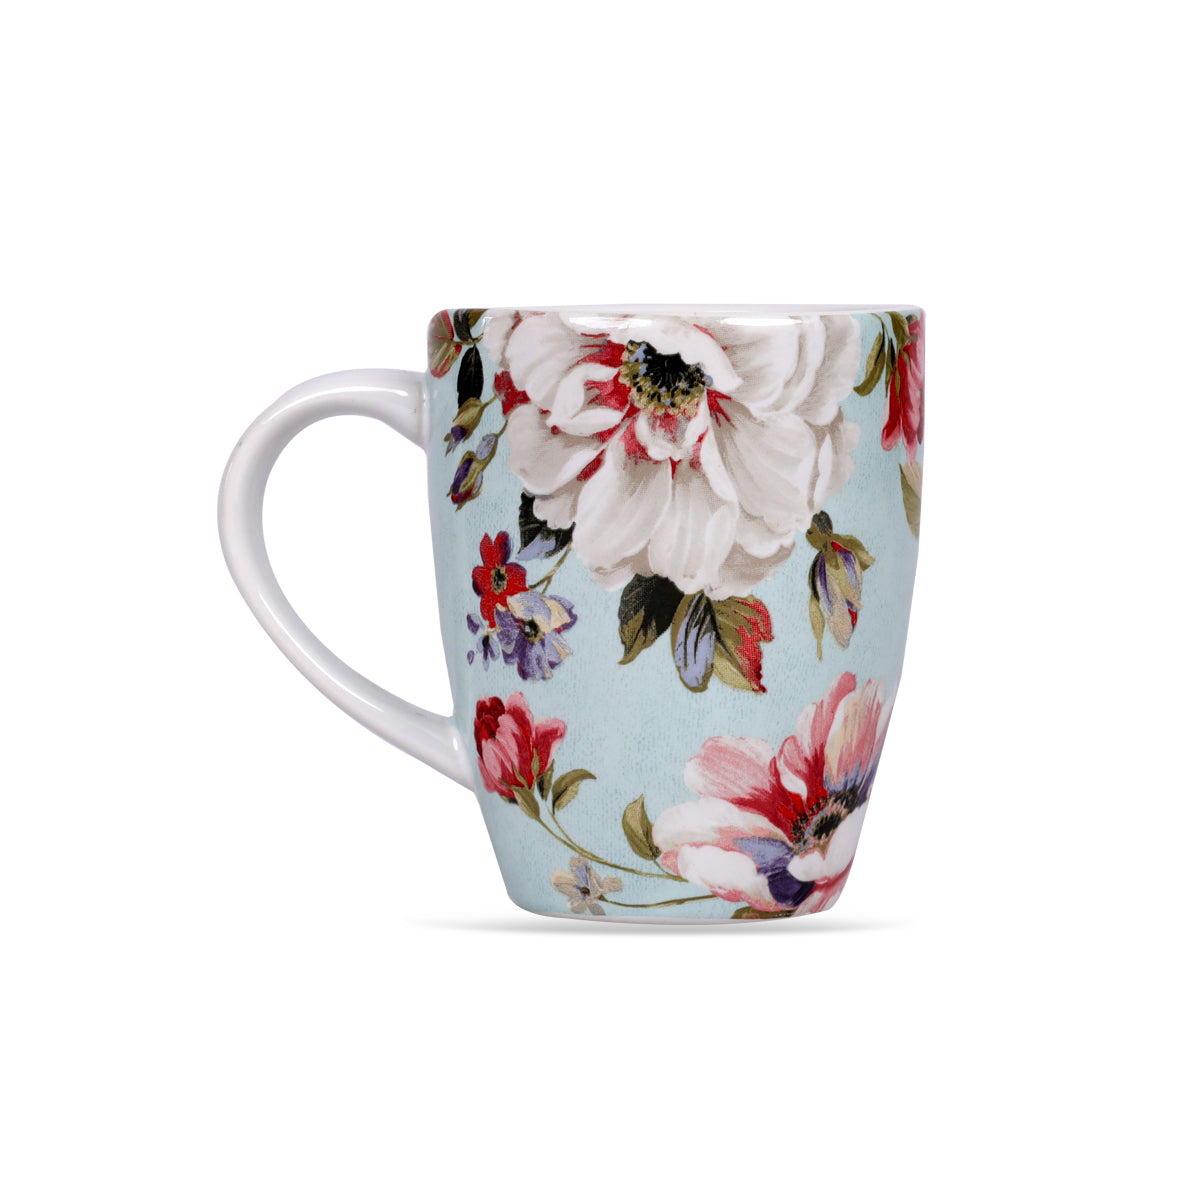 Tea Mug, Coffee Mug, buy Tea Mugs & Coffee Mugs Online;